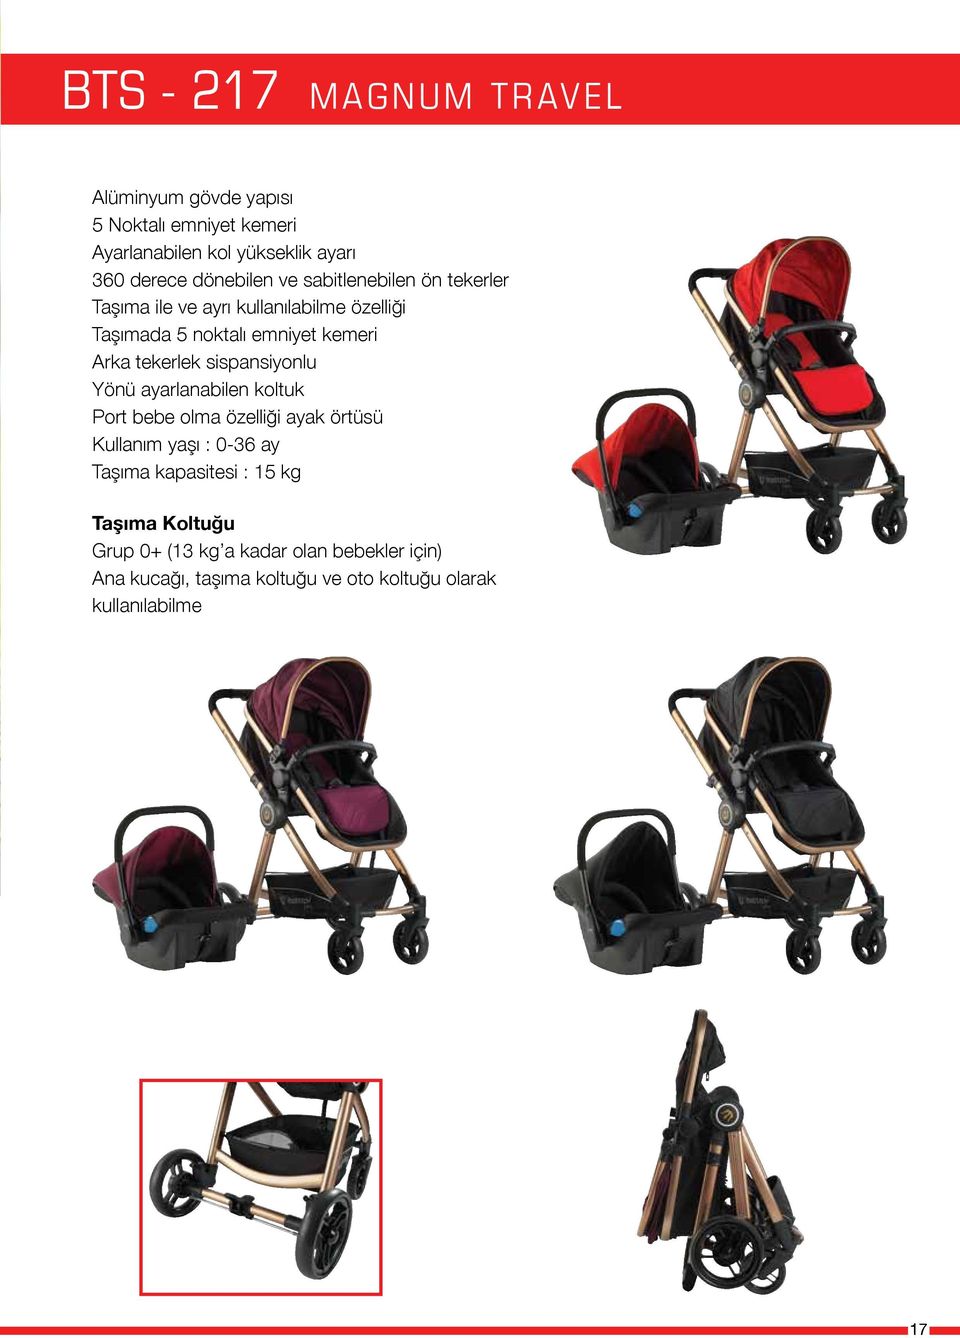 tekerlek sispansiyonlu Yönü ayarlanabilen koltuk Port bebe olma özelliği ayak örtüsü Kullanım yaşı : 0-36 ay Taşıma